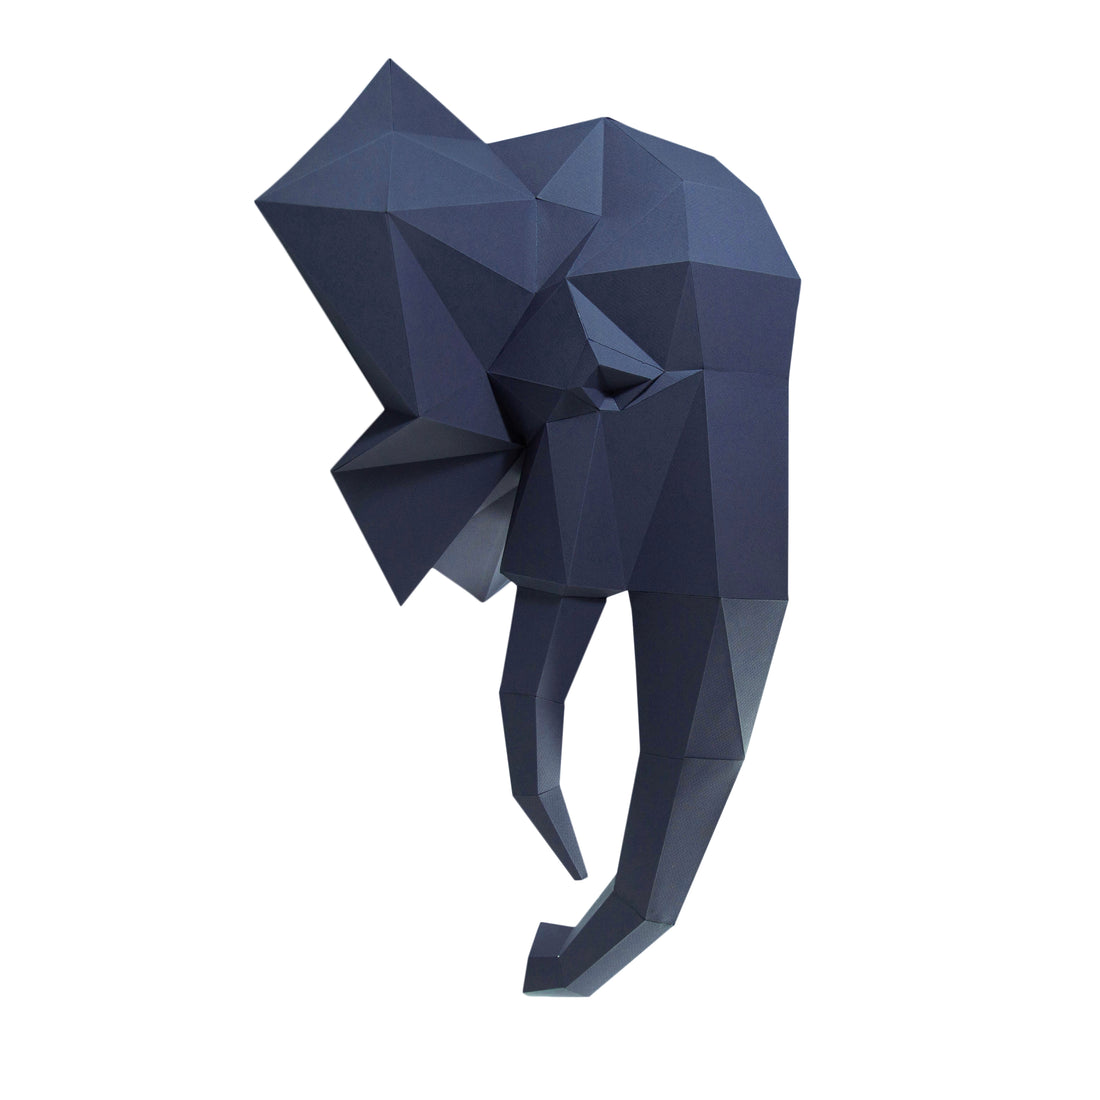 3D PAPERCRAFT WALL ART DIY KIT | ELEPHANT HEAD